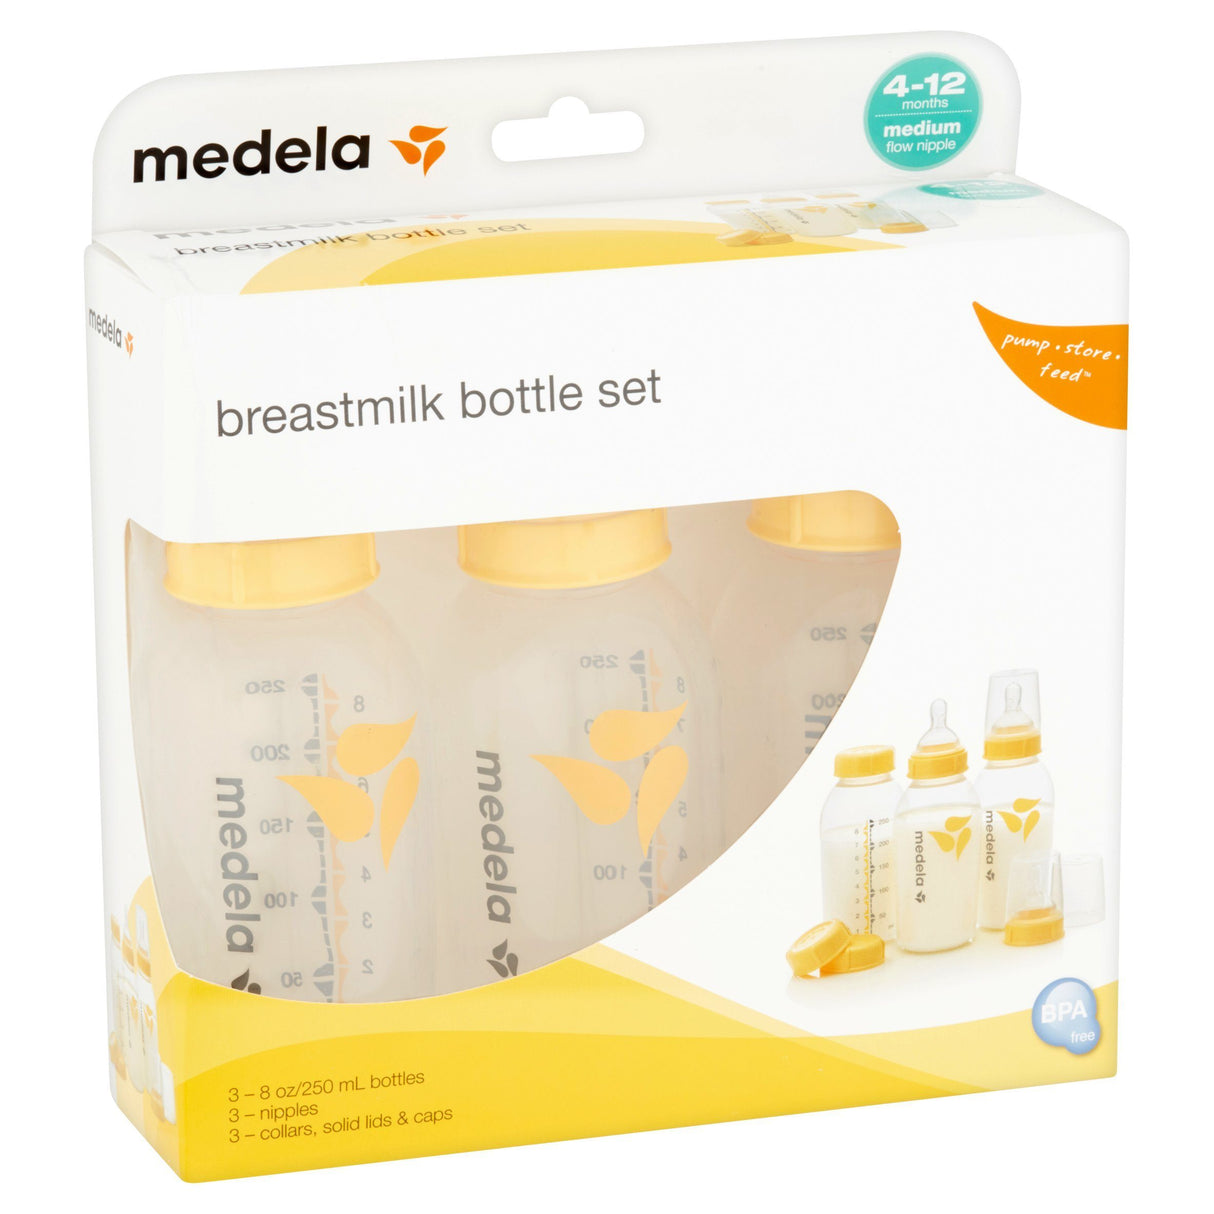 https://www.saveritemedical.com/cdn/shop/products/medelar-breastmilk-feeding-storage-set-8-oz-medela-850943.jpg?v=1631419349&width=1214